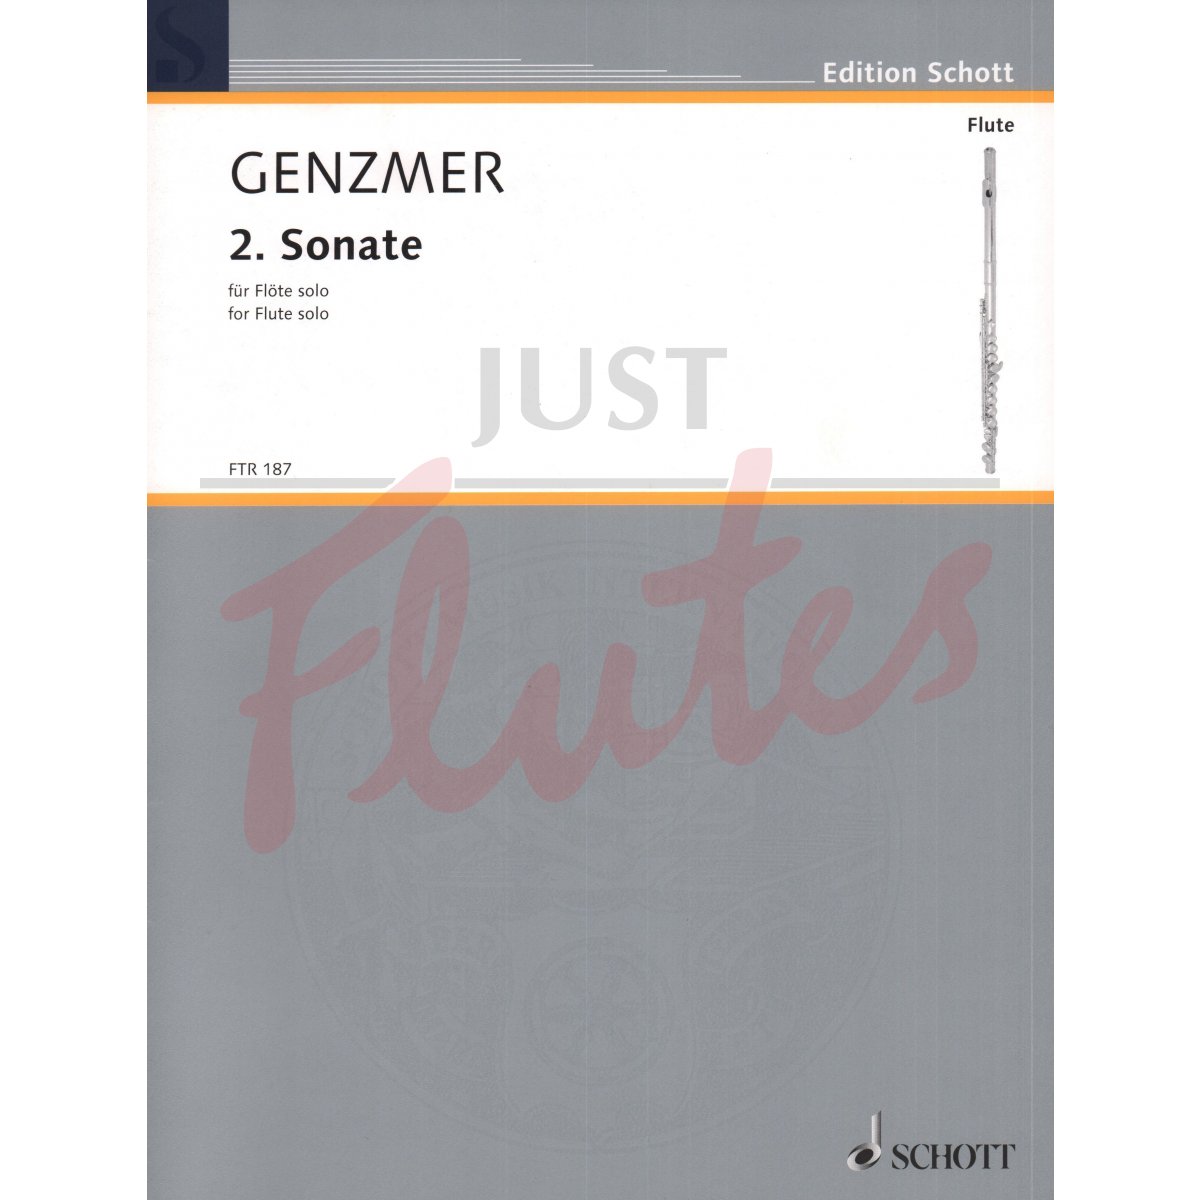 2nd Sonata for Solo Flute